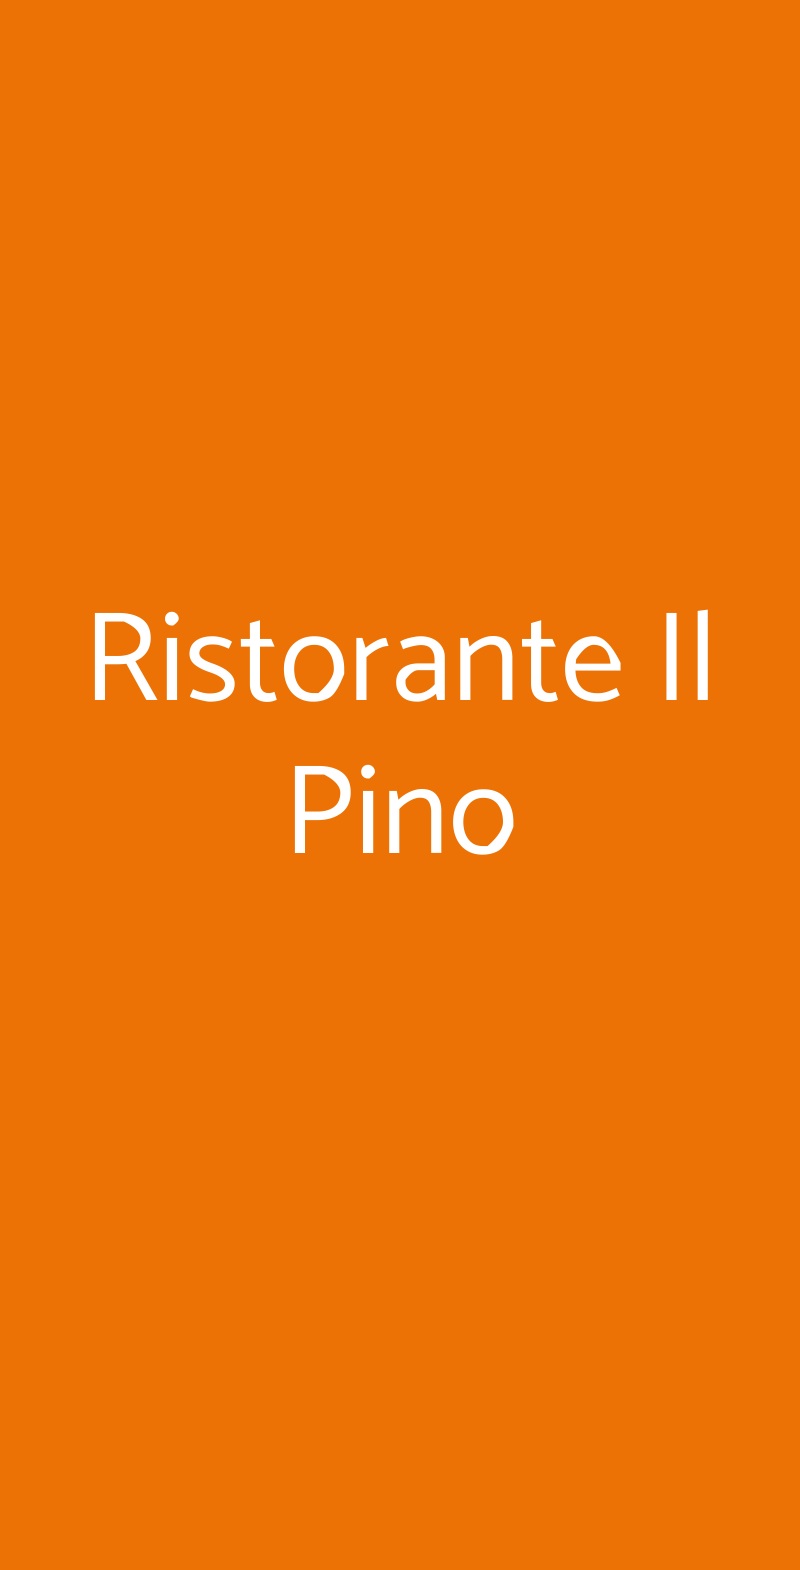 Ristorante Il Pino San Gimignano menù 1 pagina